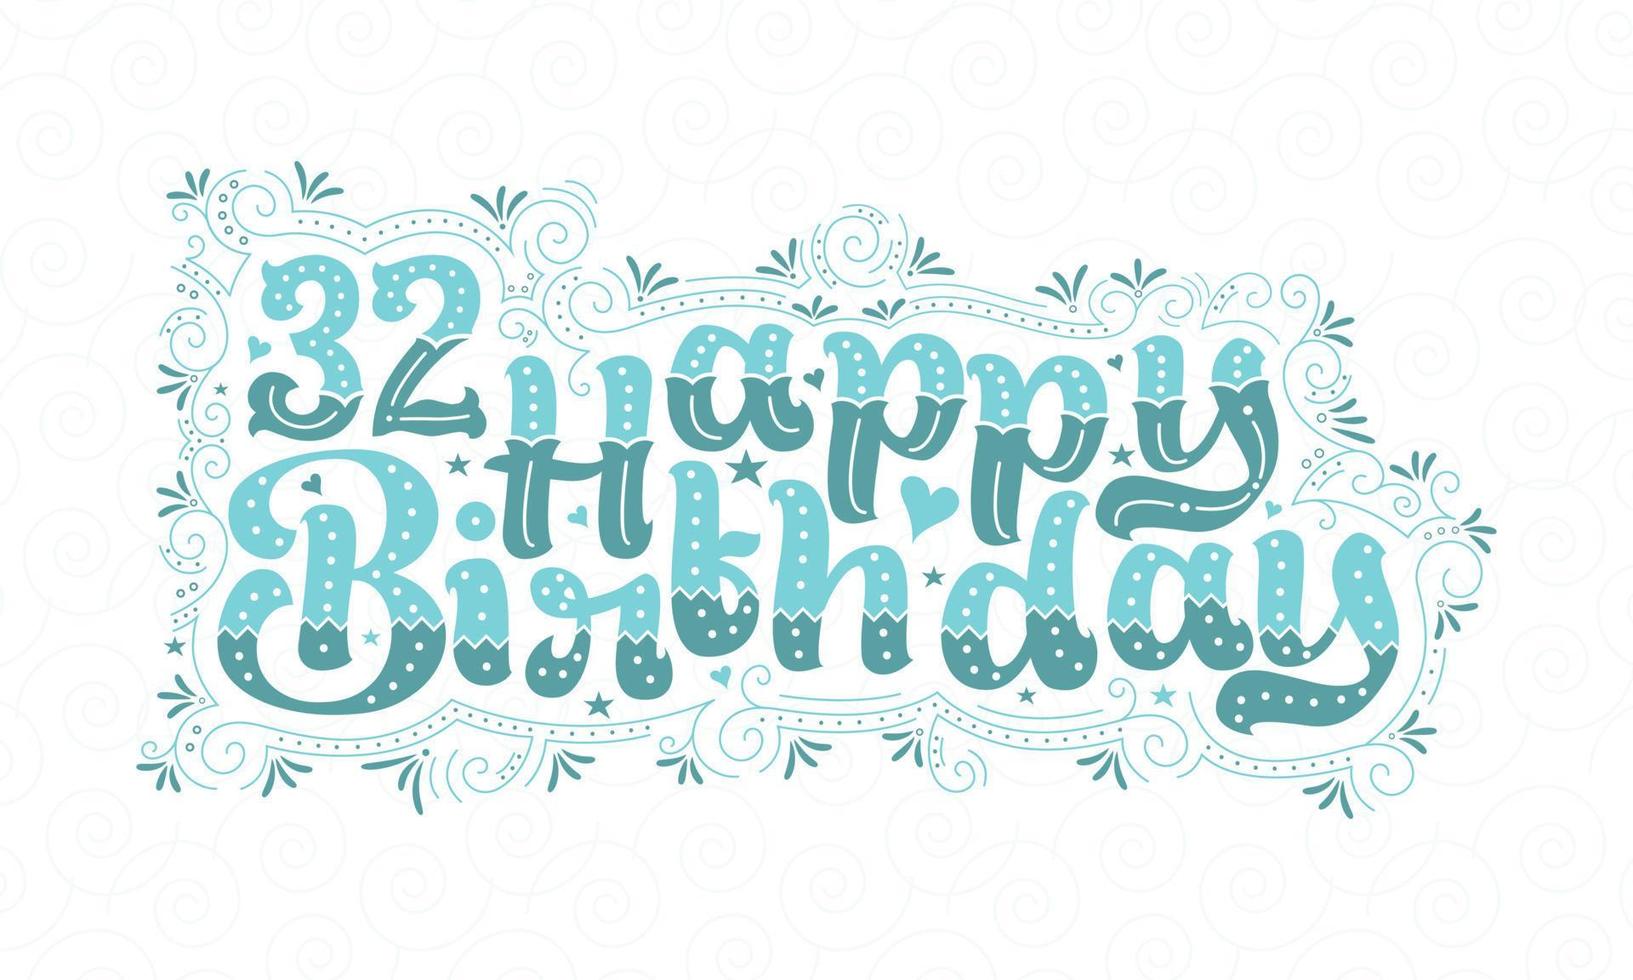 32e gelukkige verjaardag belettering, 32 jaar verjaardag mooi typografieontwerp met aqua stippen, lijnen en bladeren. vector